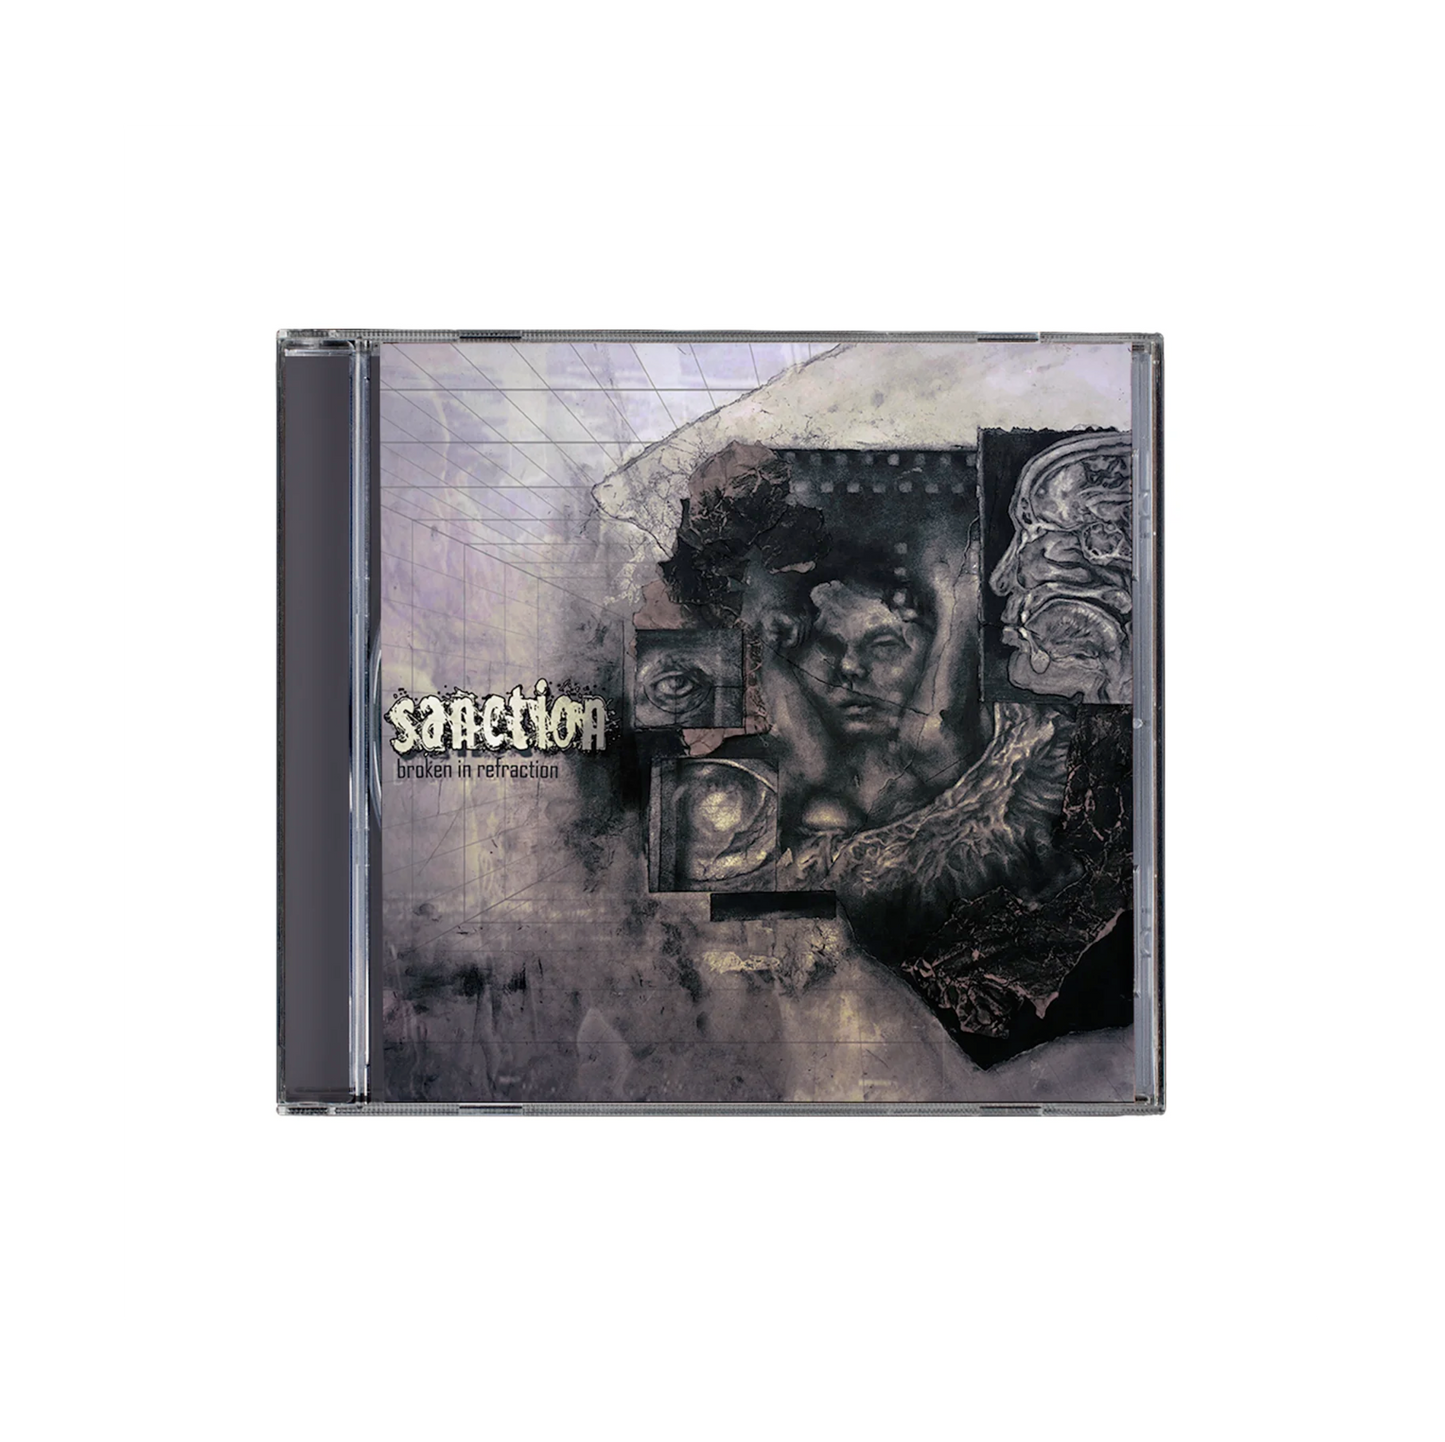 Sanction  "Broken In Refraction" CD